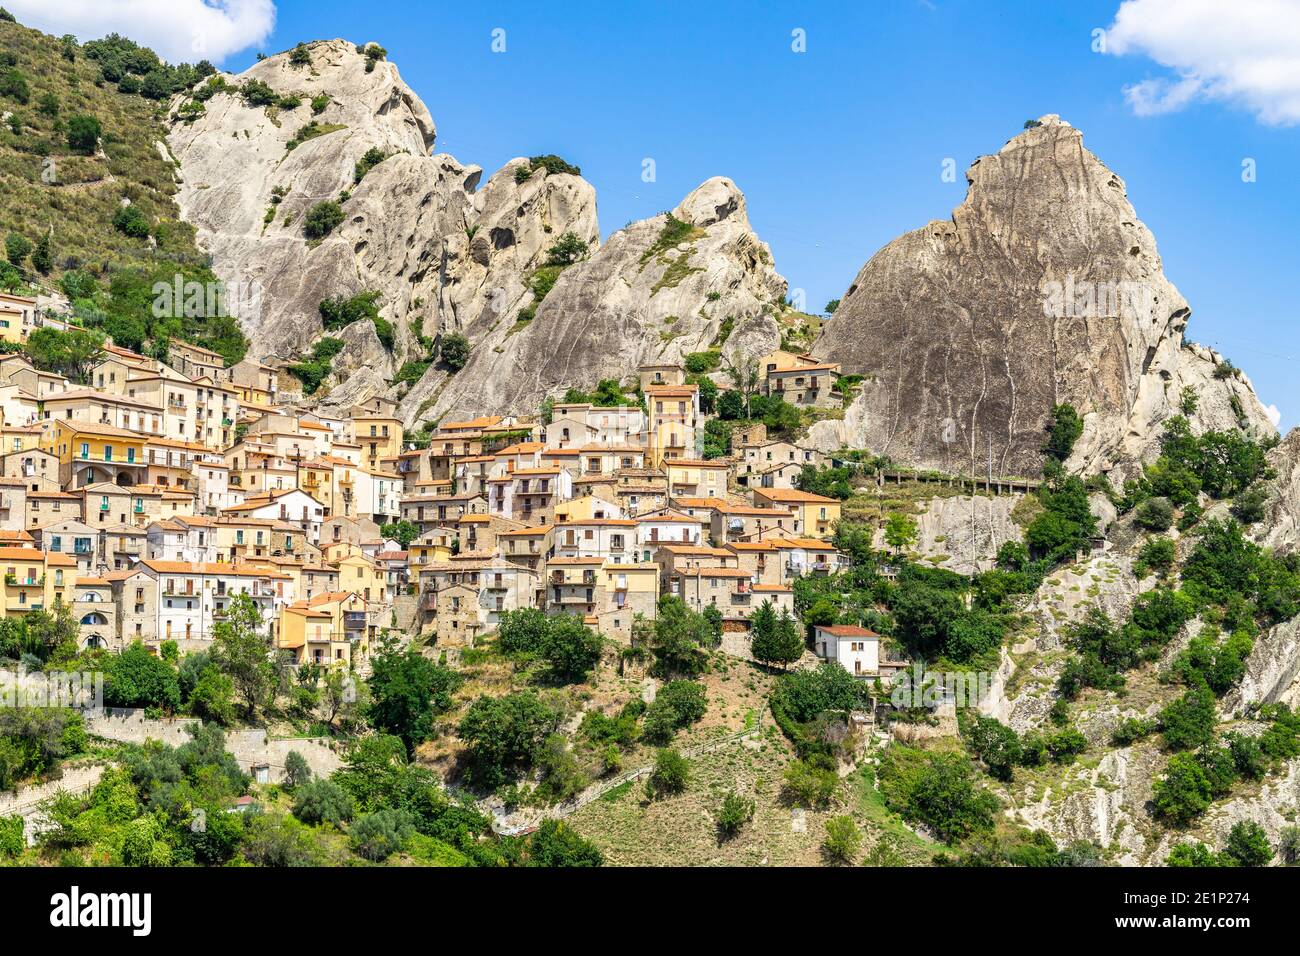 Castelmezzano ist ein schönes Dorf in der Region Basilicata unter den Gipfeln der Dolomiti lucane, Italien Stockfoto